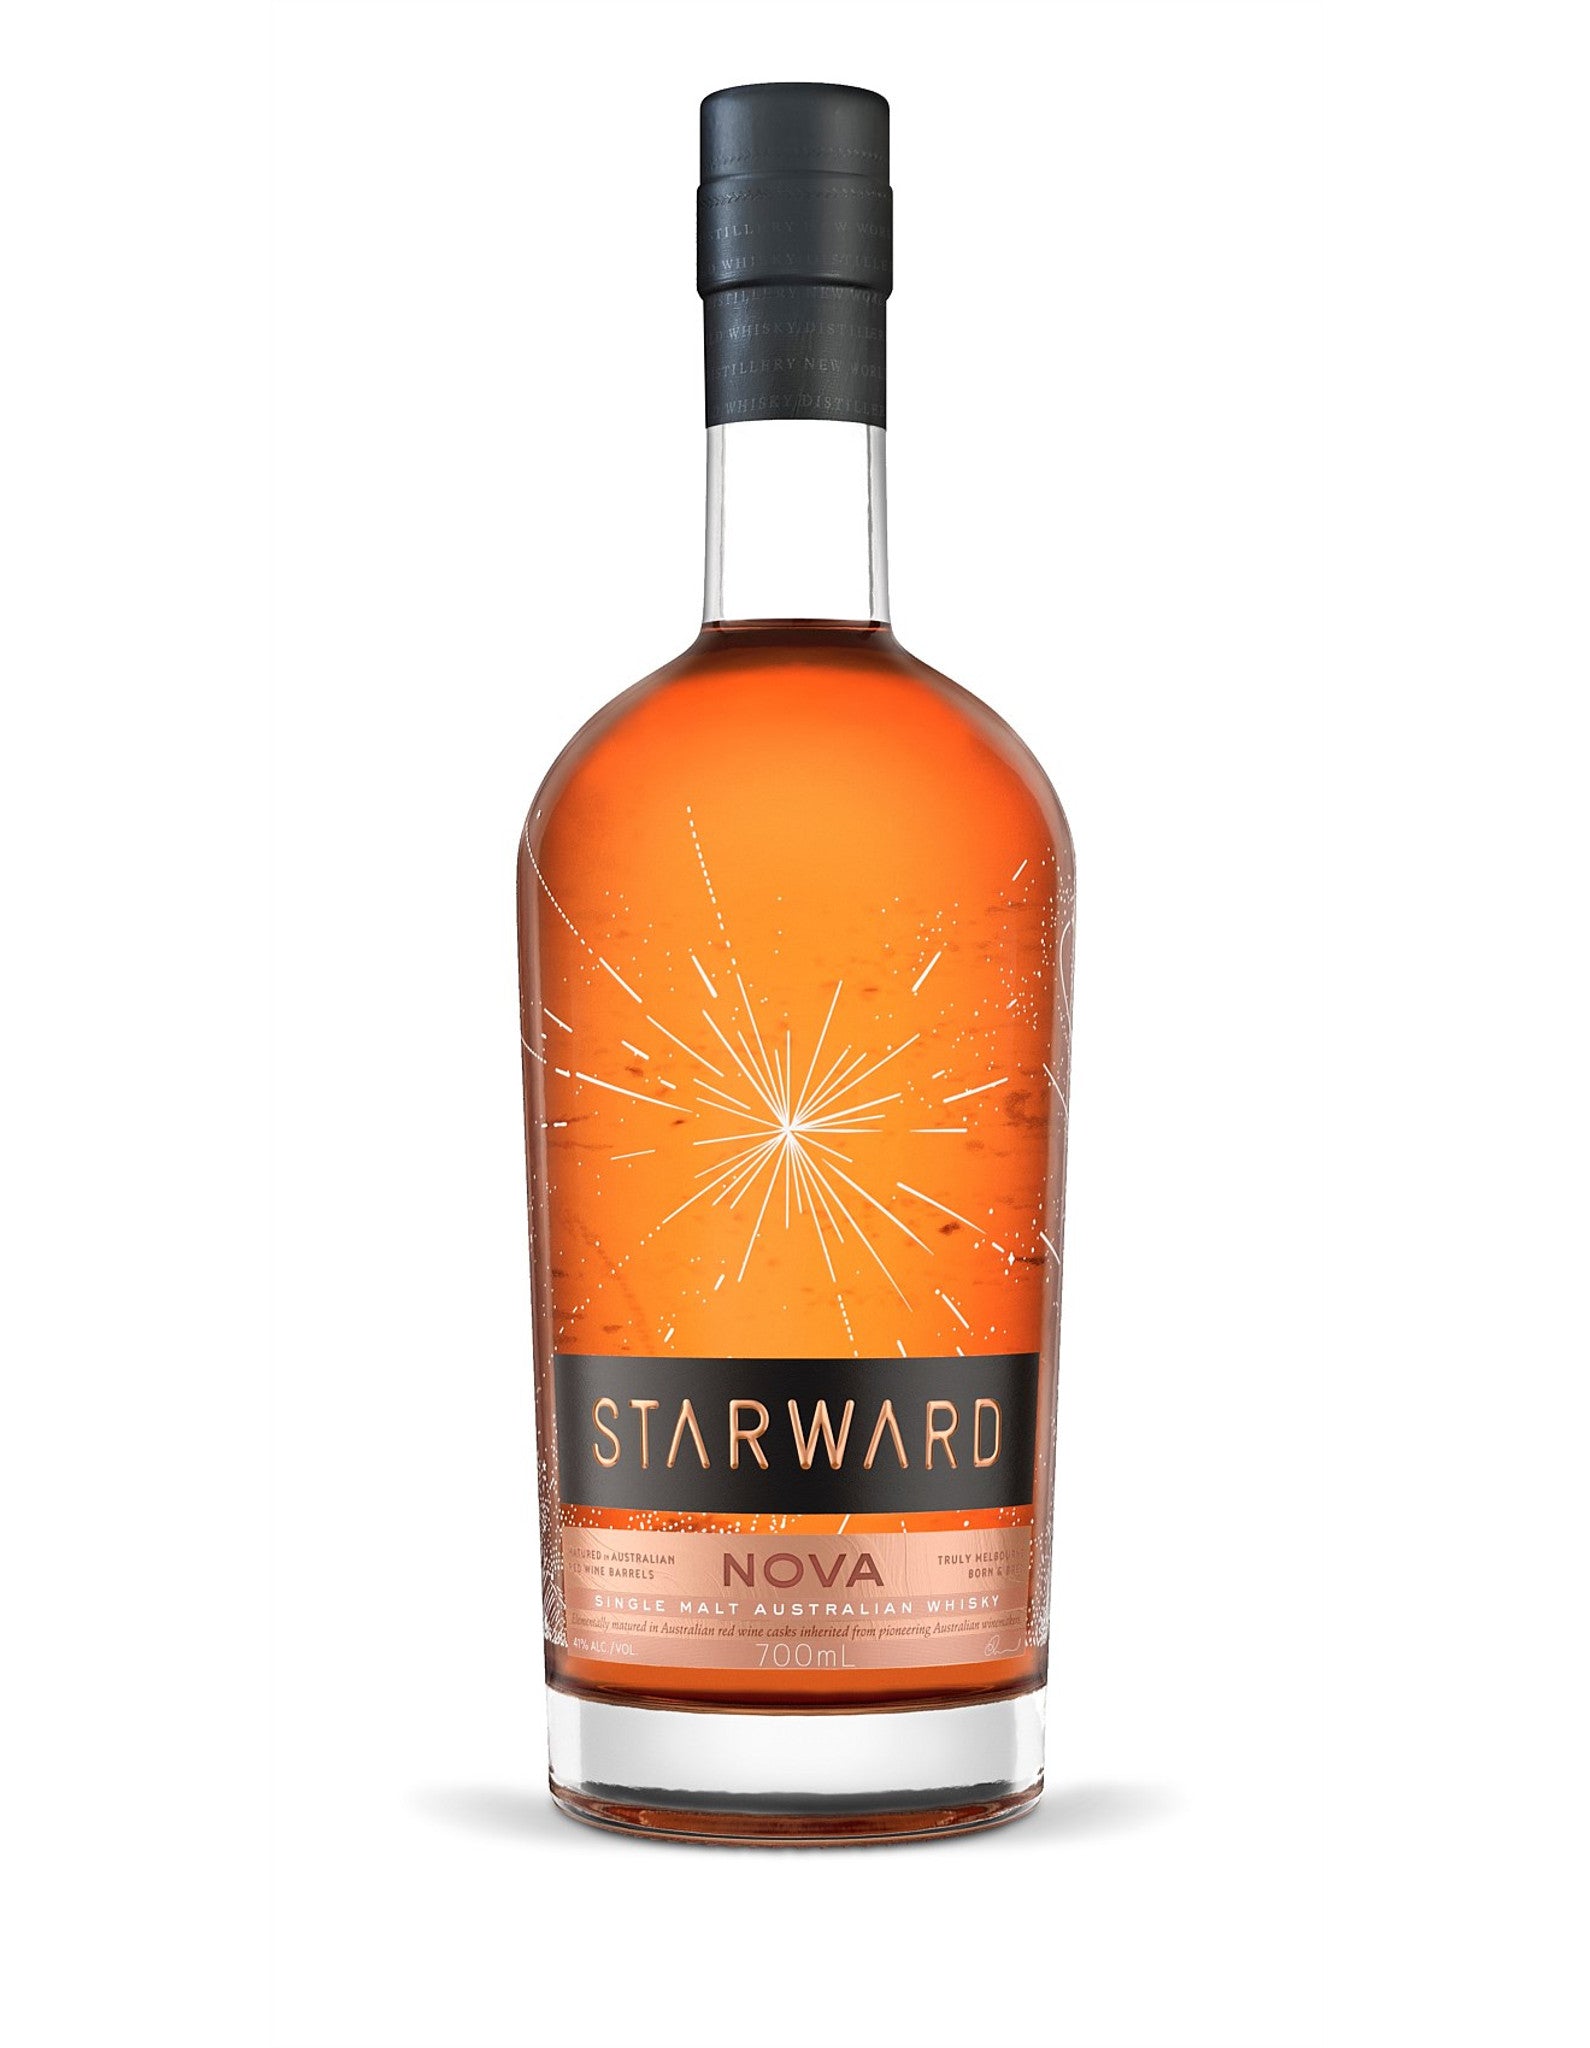 Starward Nova Single Malt Australian Whisky .jpeg__PID:d9f370f7-d221-4ce4-863e-b2033d784a96